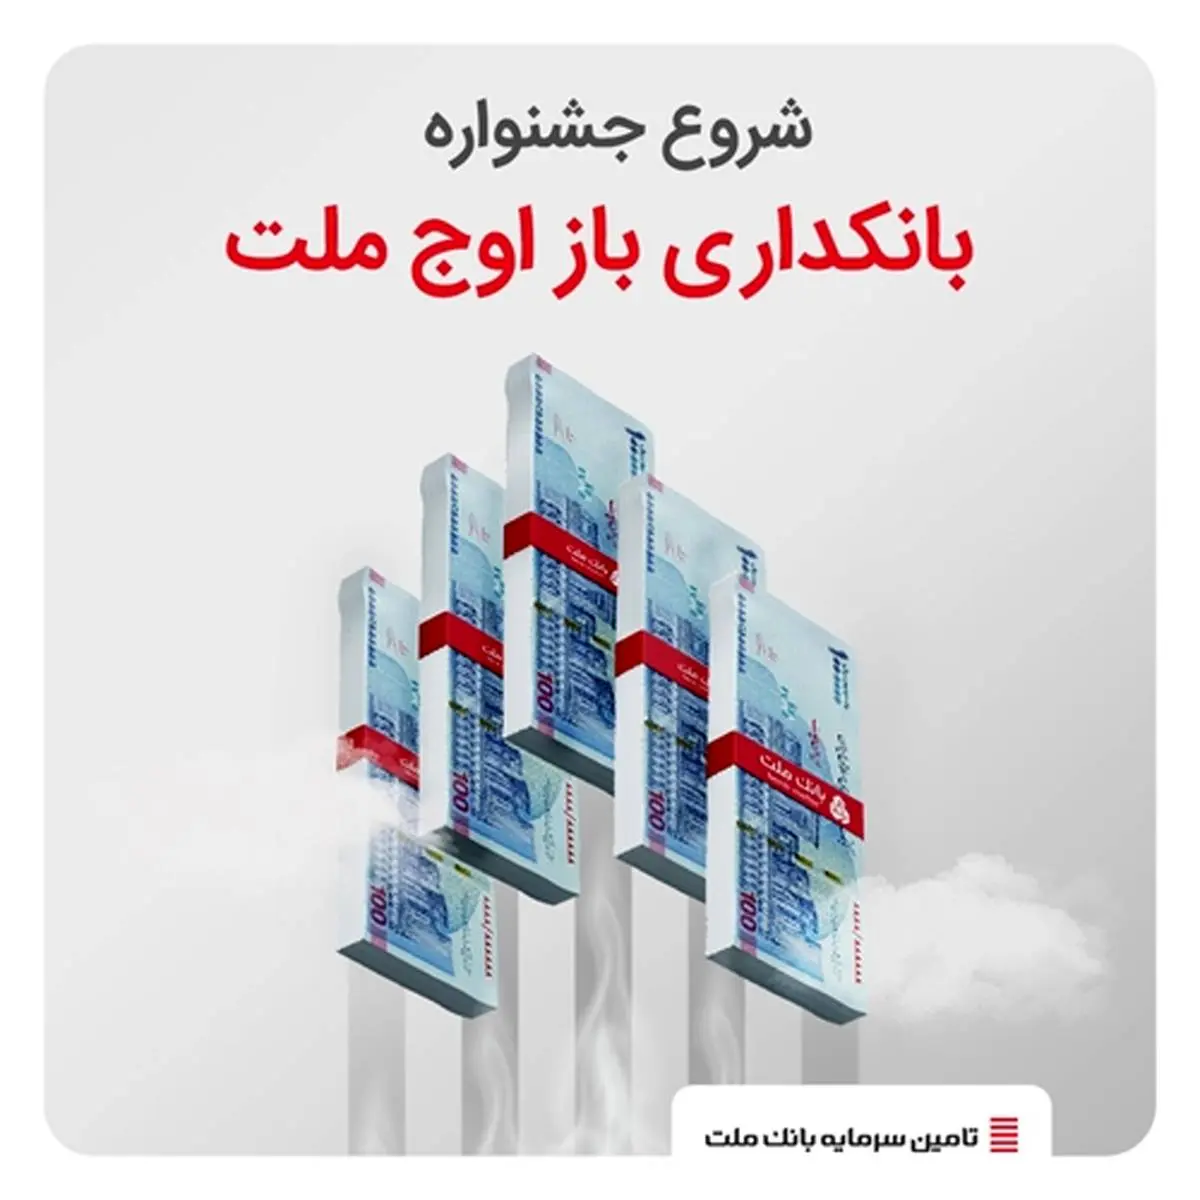 آغاز «جشنواره بانکداری باز اوج ملت» از 19 خردادماه

